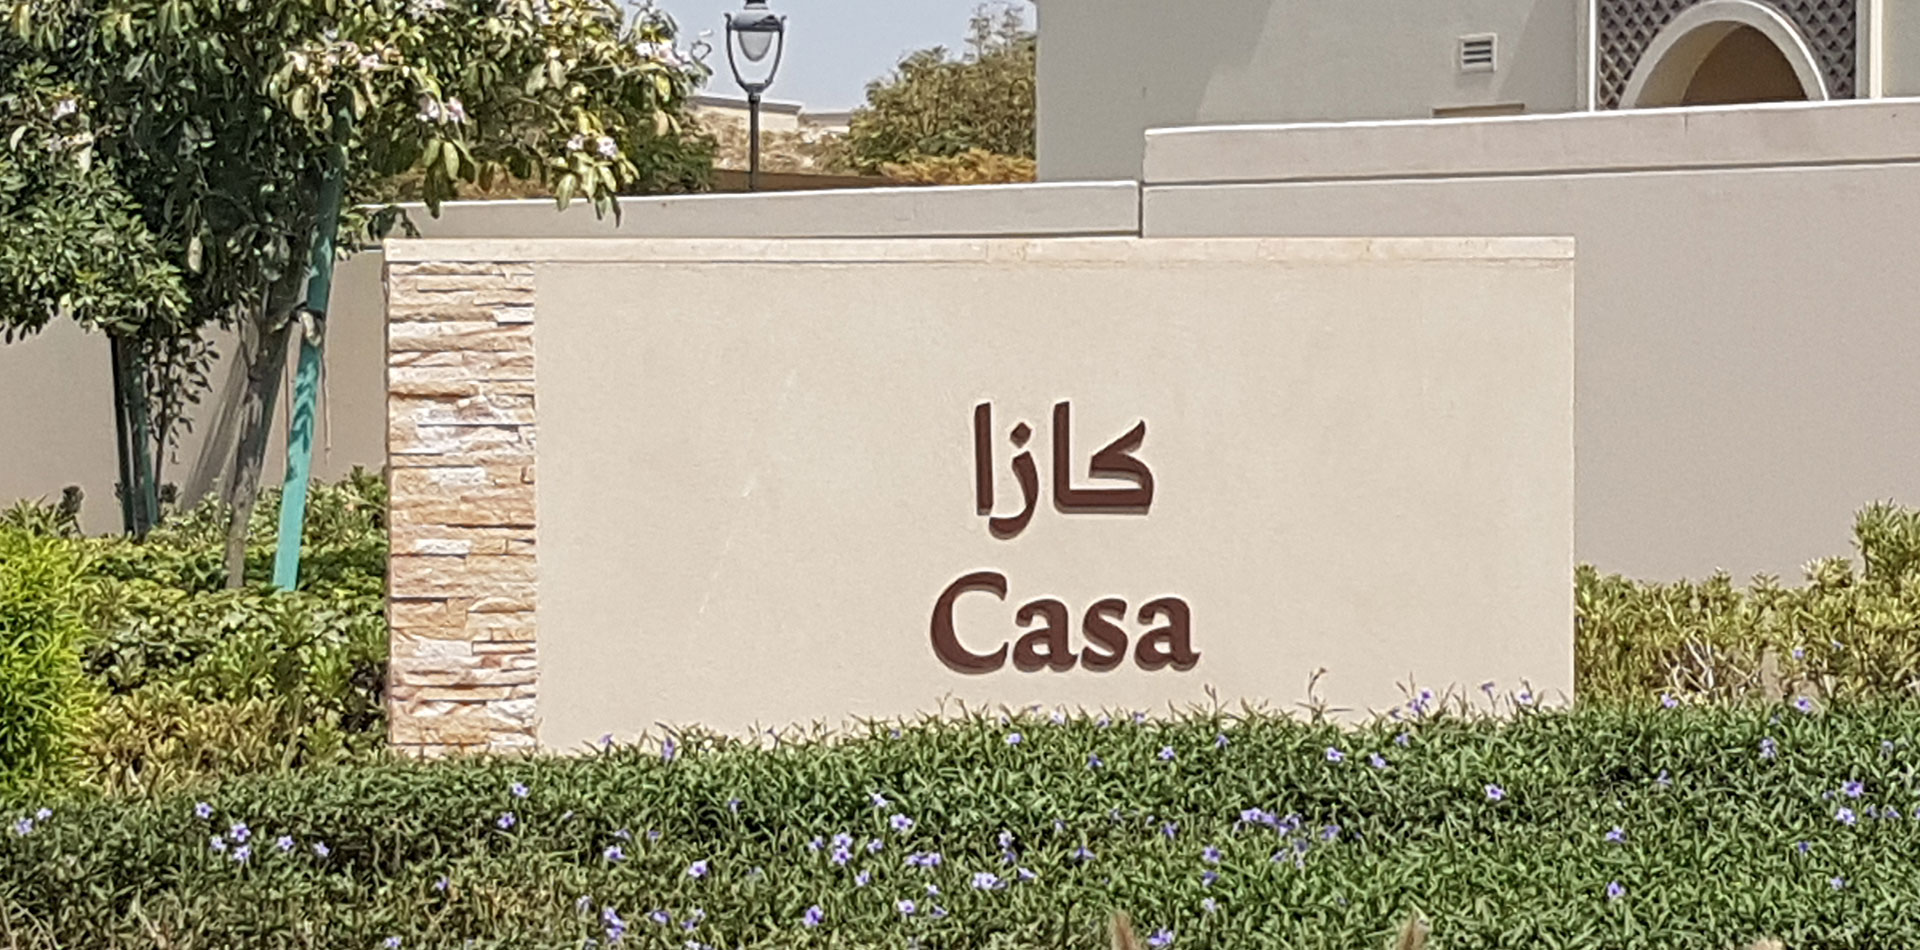 Monument Signage of Casa